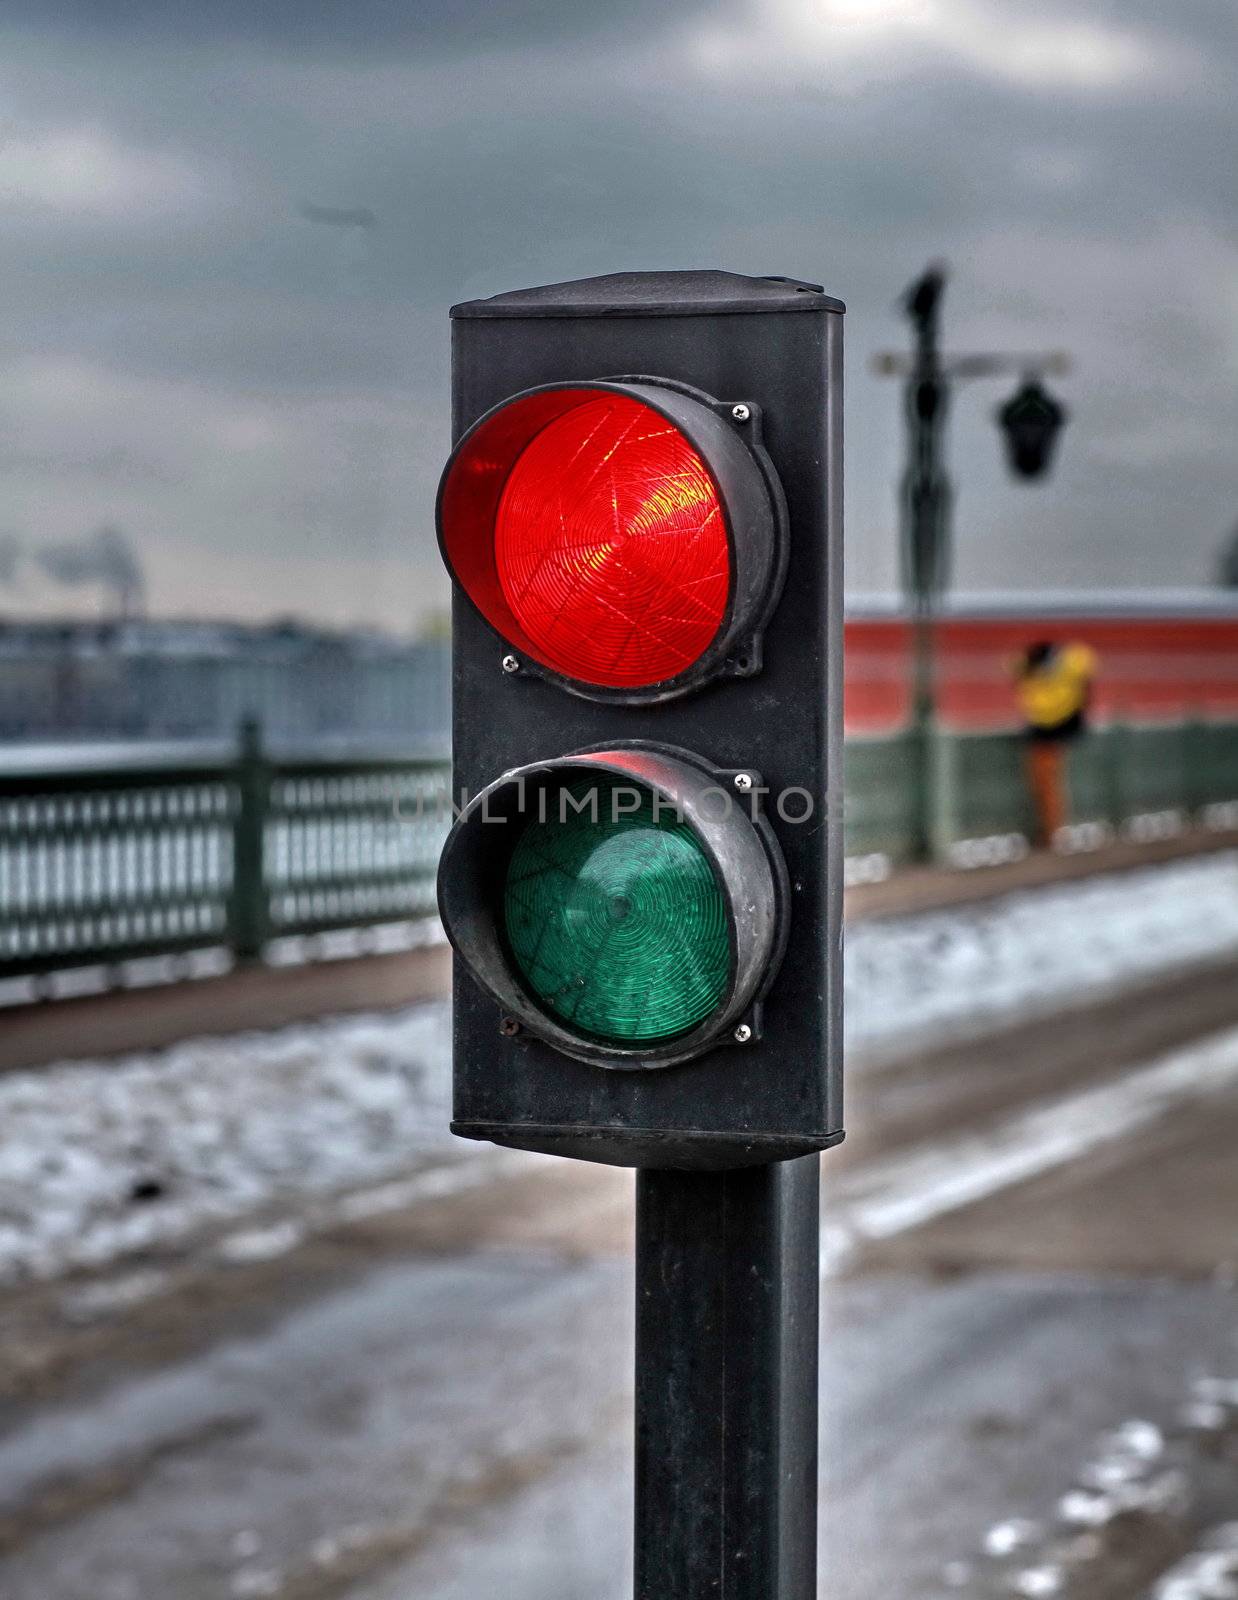 Red light warns of danger